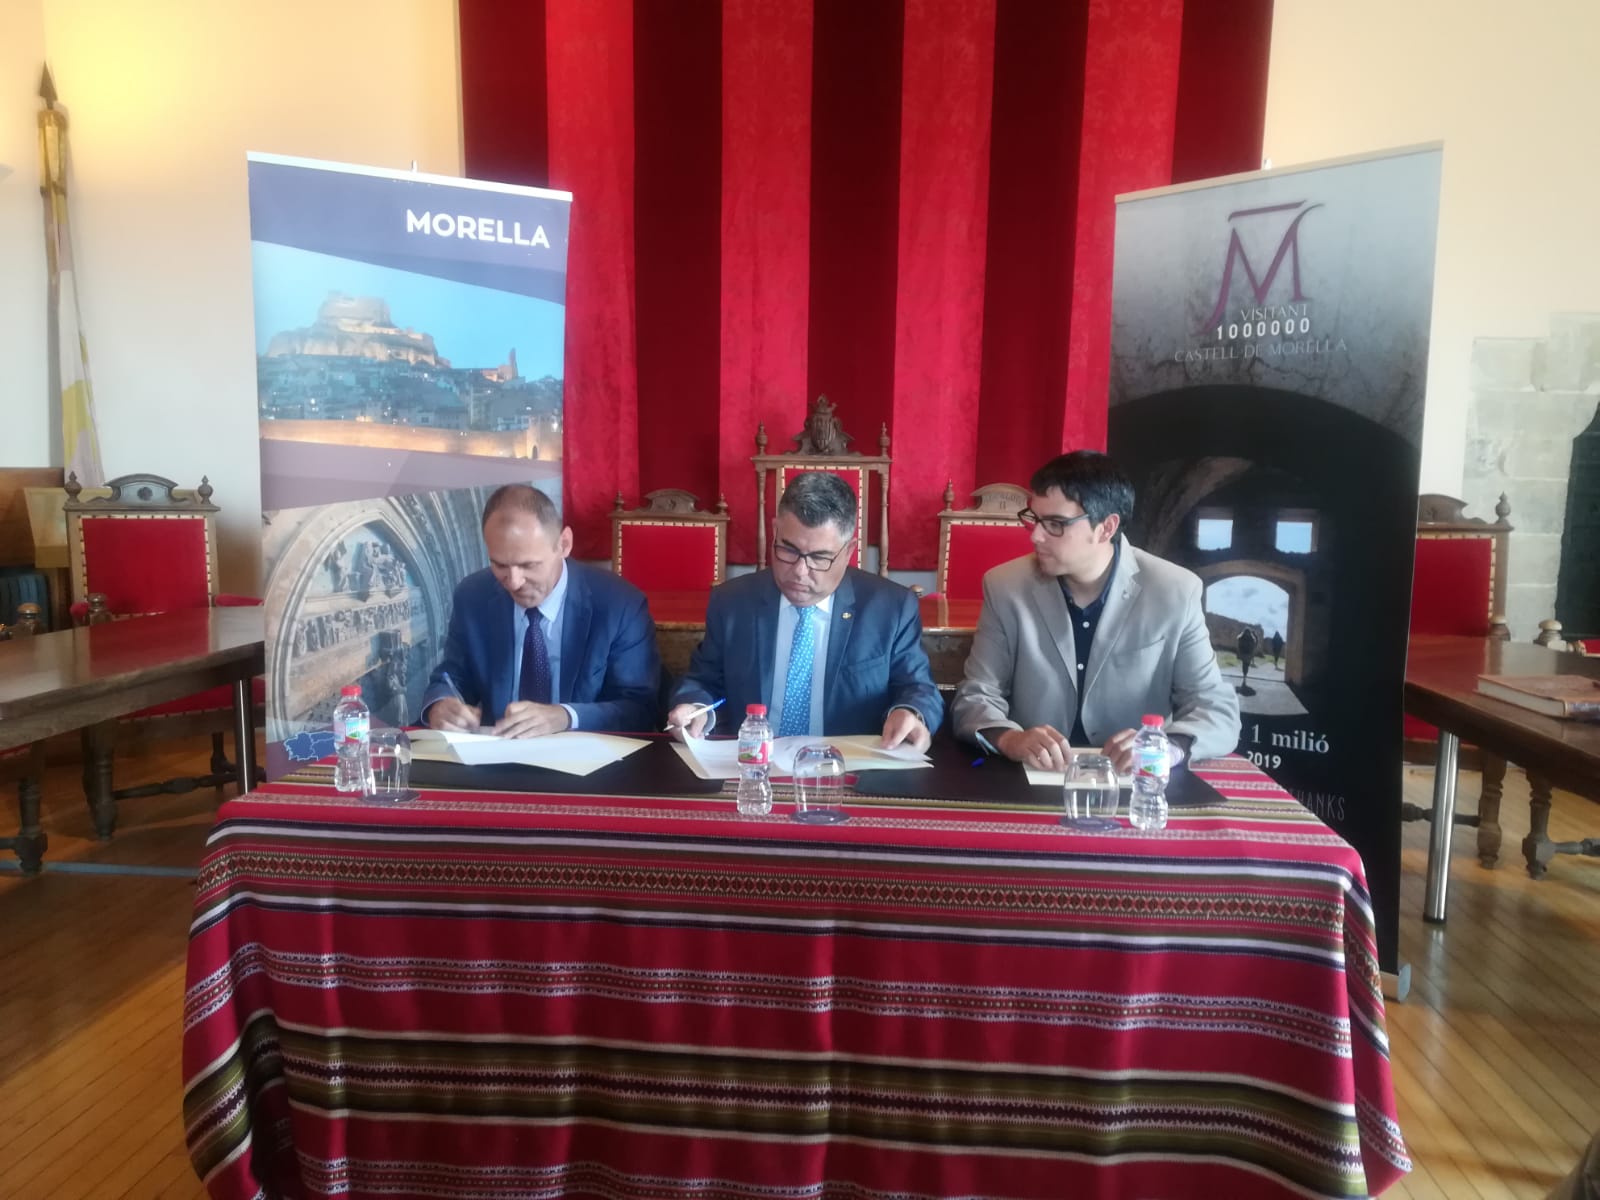 El Ministerio de Cultura entrega las llaves del Castillo y Murallas de Morella al Ayuntamiento para potenciar el uso cultural del espacio 